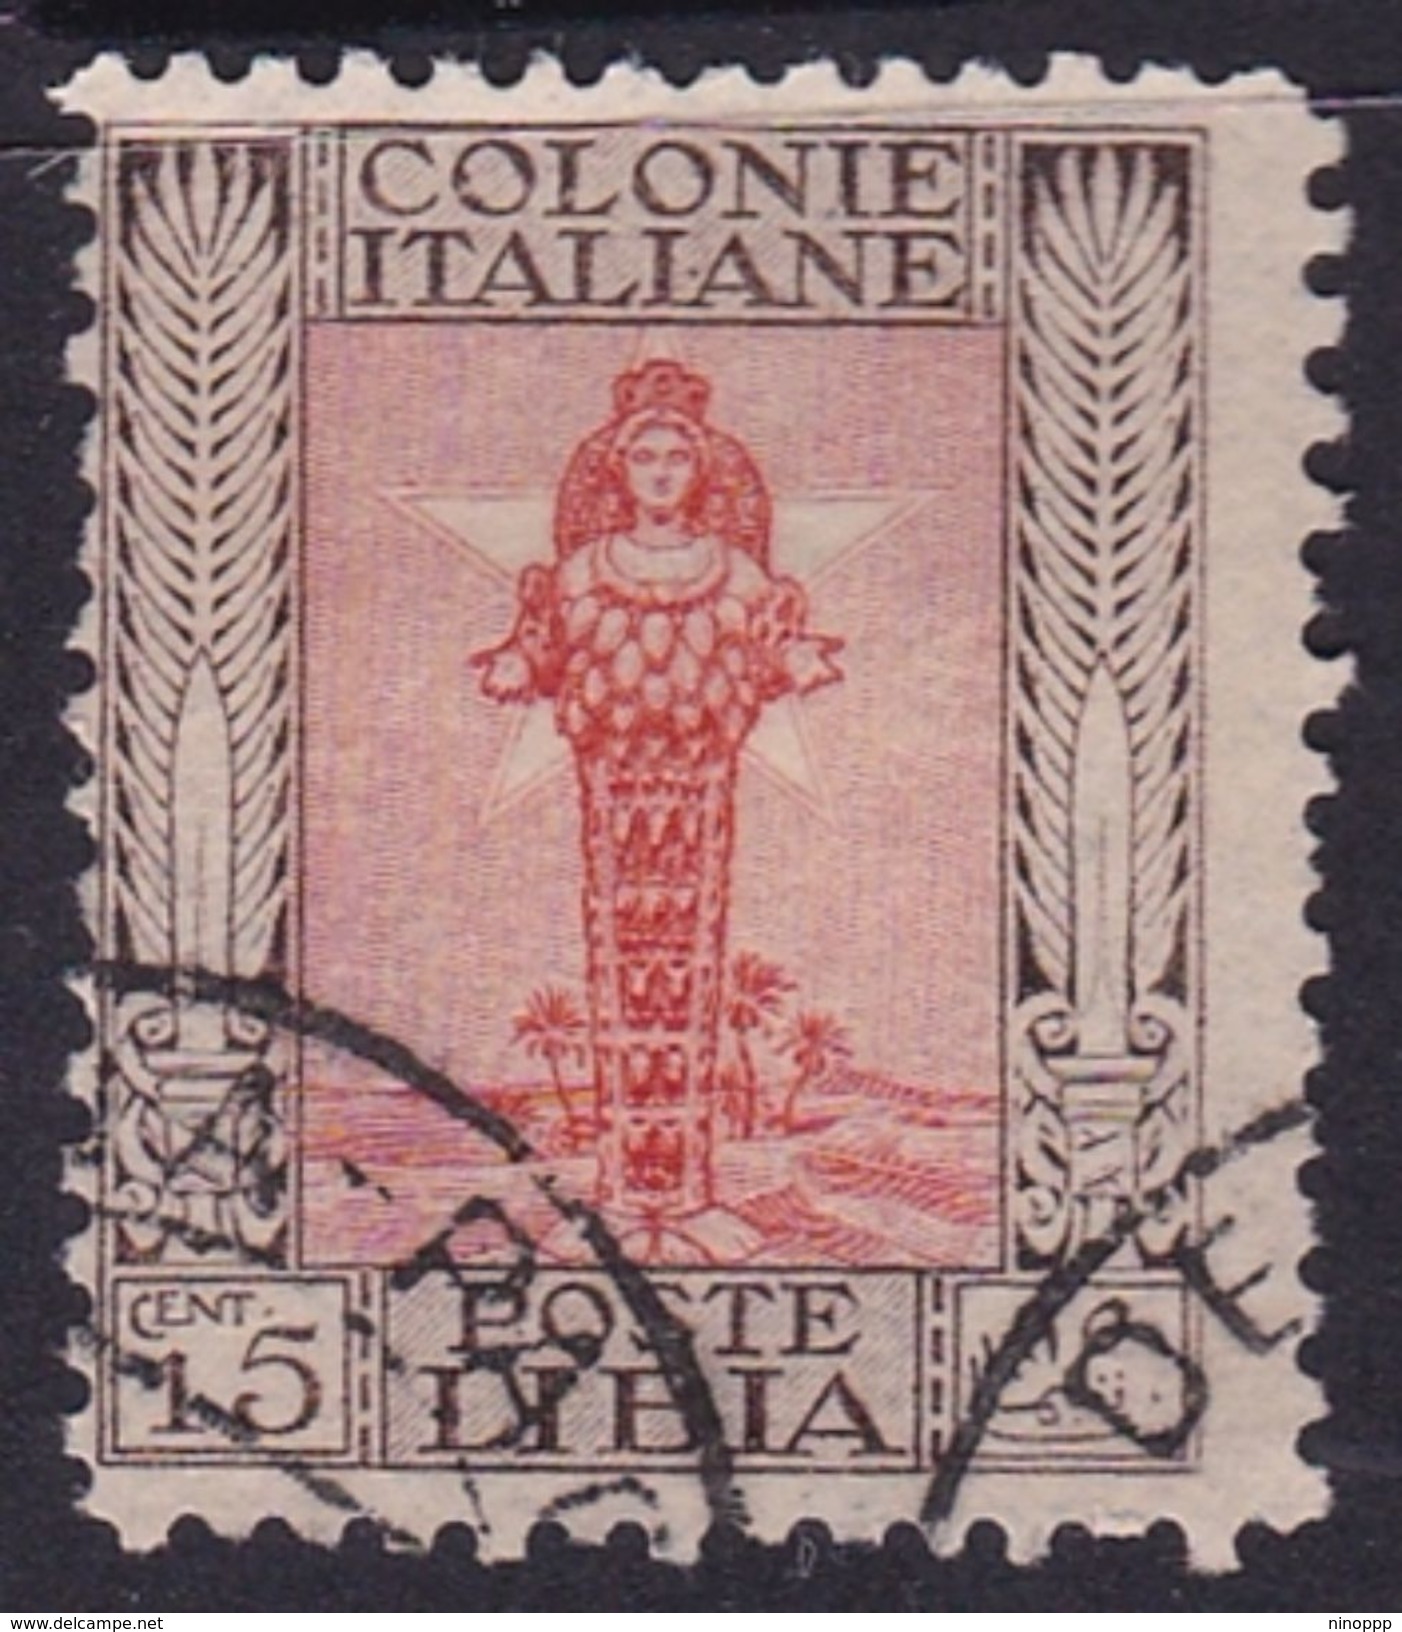 Italy-Colonies And Territories-Libya S 62 1926-30 ,Diana Of Ephesus,perf 11,15c,used - Libya